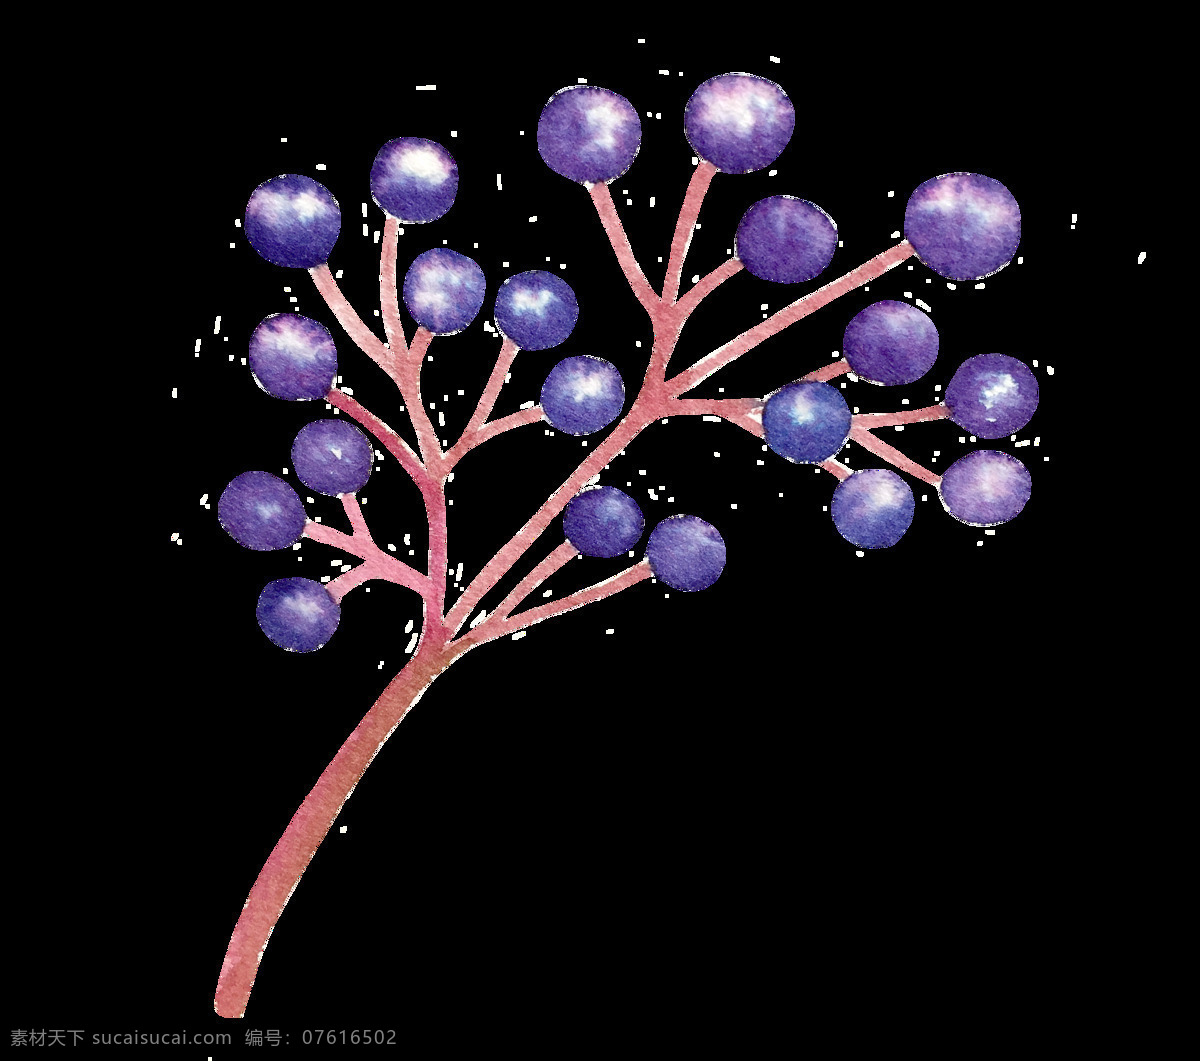 紫色 成熟 果实 卡通 透明 抠图专用 装饰 设计素材